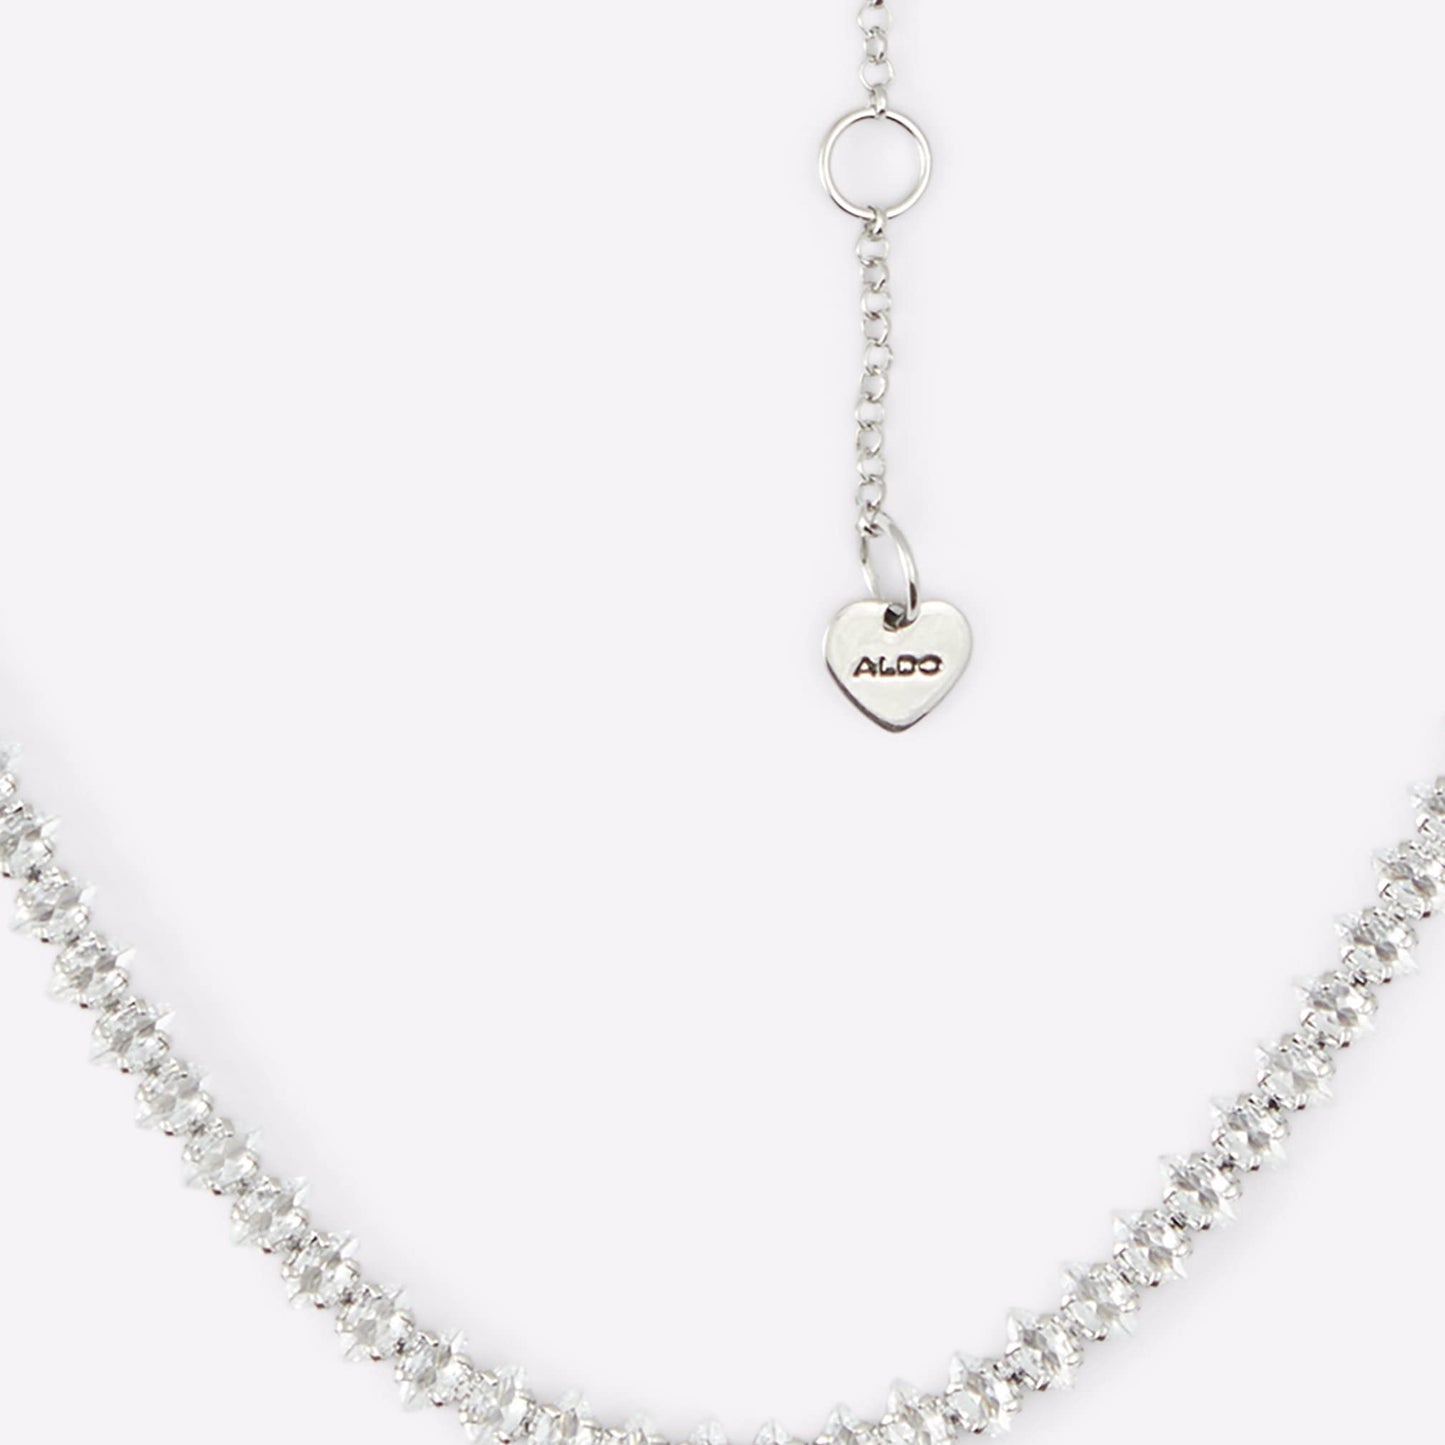 Aldo Women's Gaventariel Chain Necklace, Silver, Standard